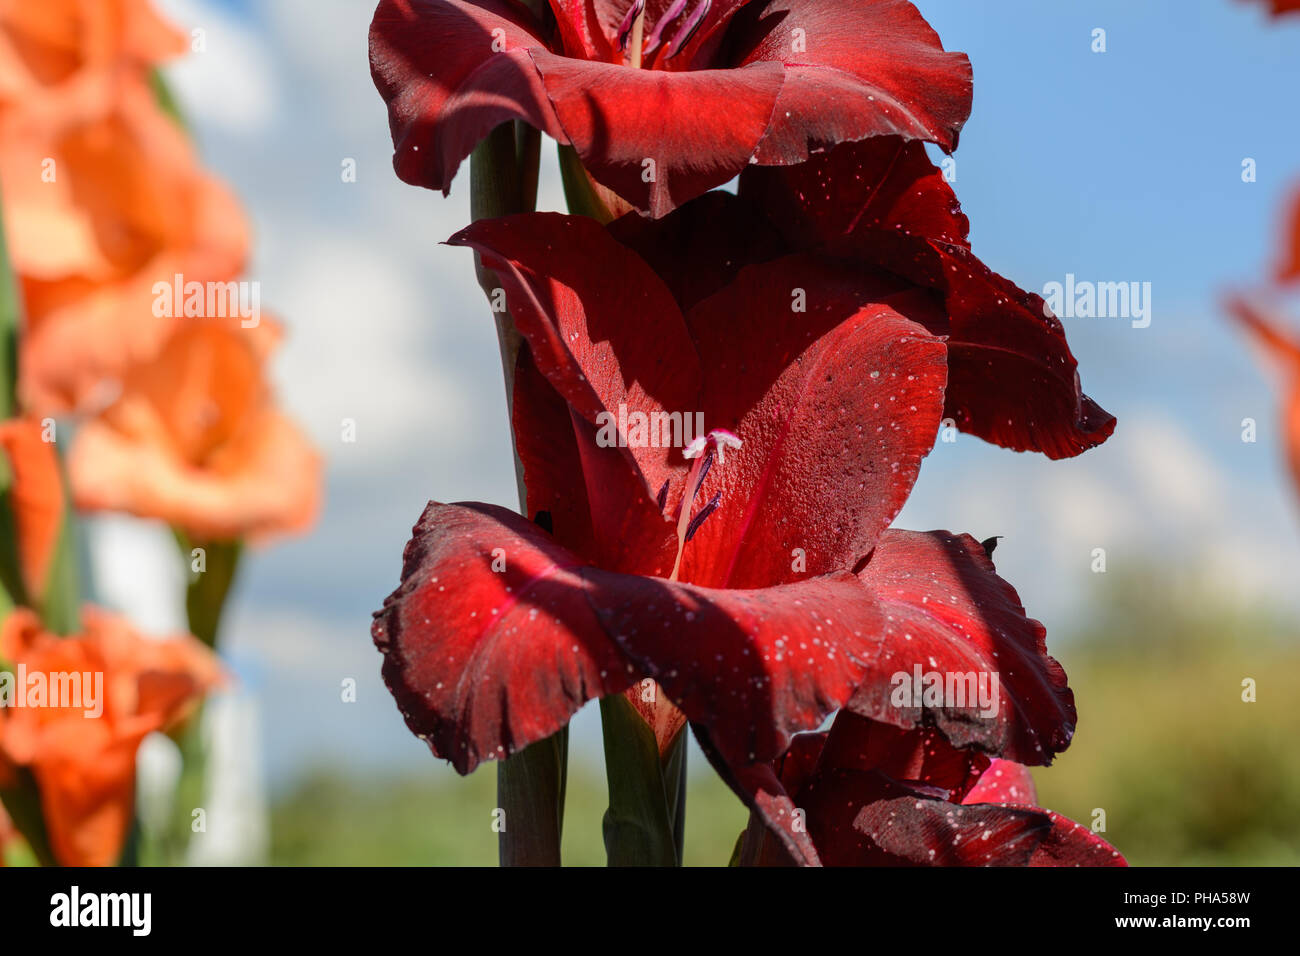 Floraison rouge intense de fleurs coupées en gros plan - glaïeul Banque D'Images